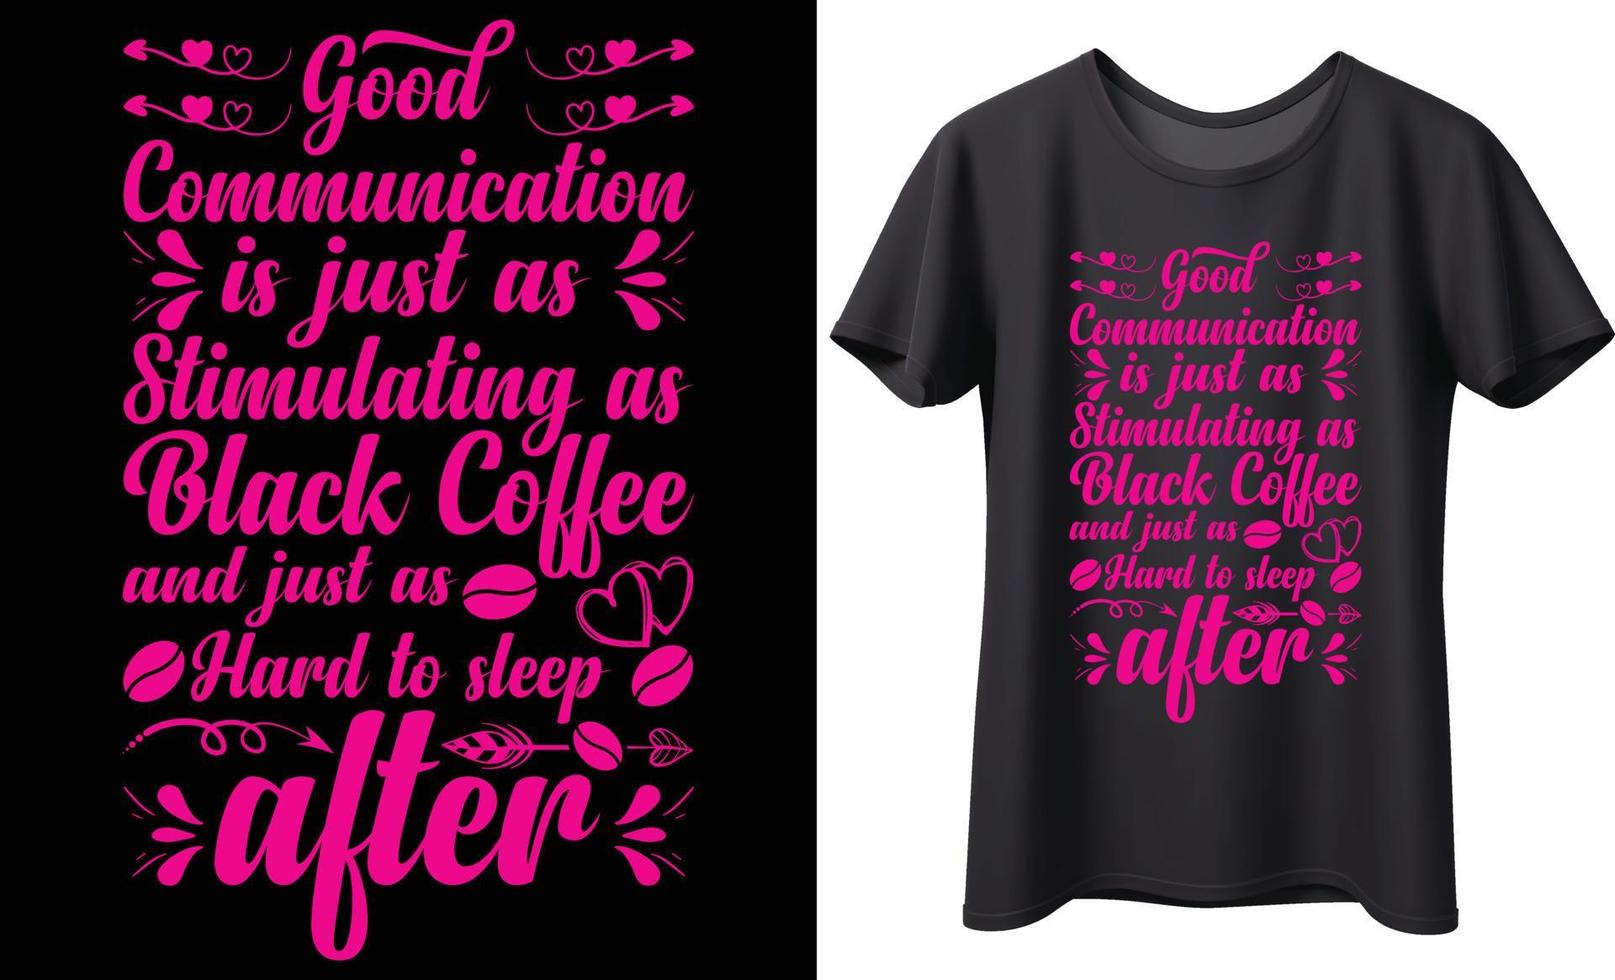 Bra kommunikation är bara som stimulerande som svart kaffe och bara som hård till sömn vektor typografi t-shirt design. perfekt för Allt skriva ut föremål. handskriven vektor. isolerat på svart bakgrund.